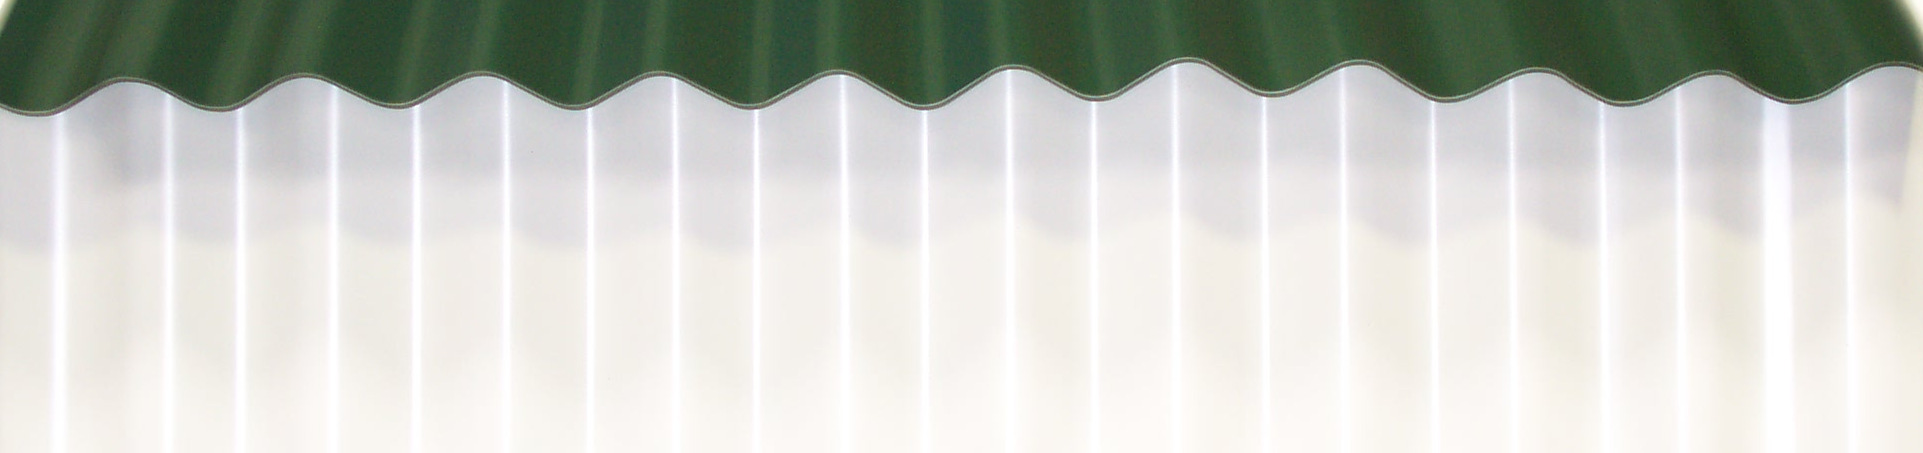 3. Stalen golfplaten Wellbleche aus Stahl Steel corrugated sheeting Wij zijn producent van rechte en gebogen stalen golfplaten met profiel 18/76.